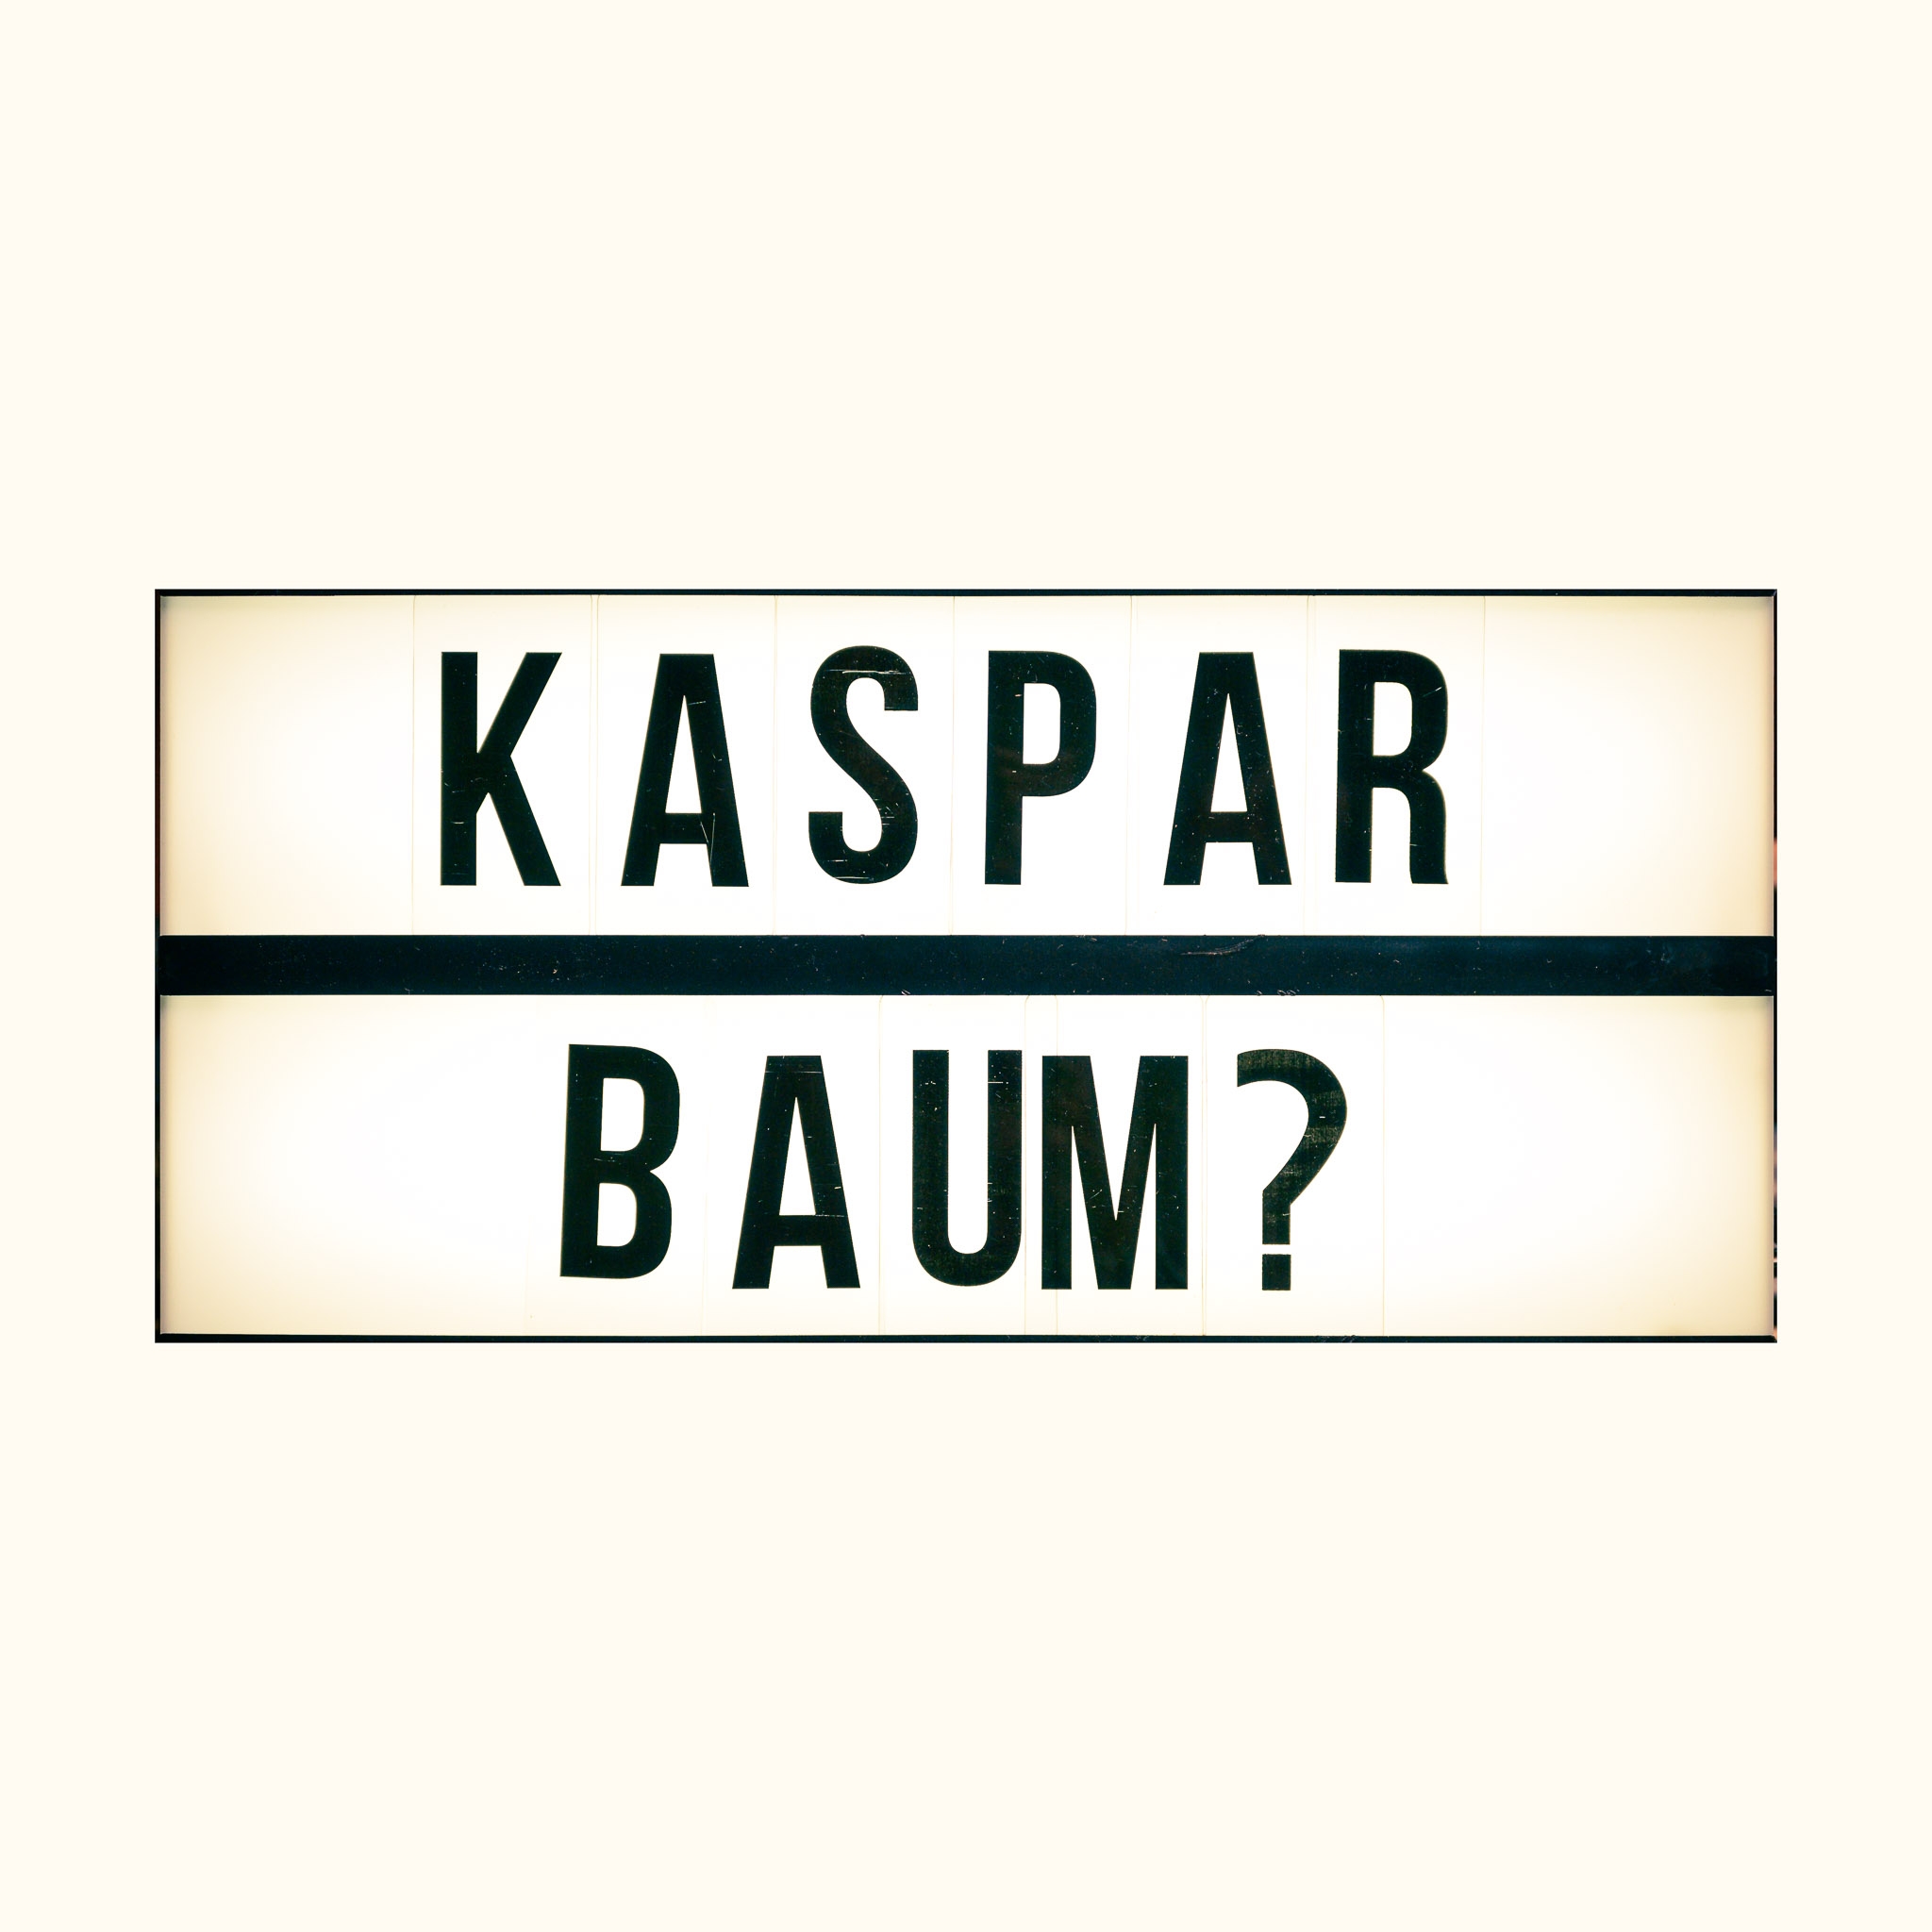 Kaspar Baum